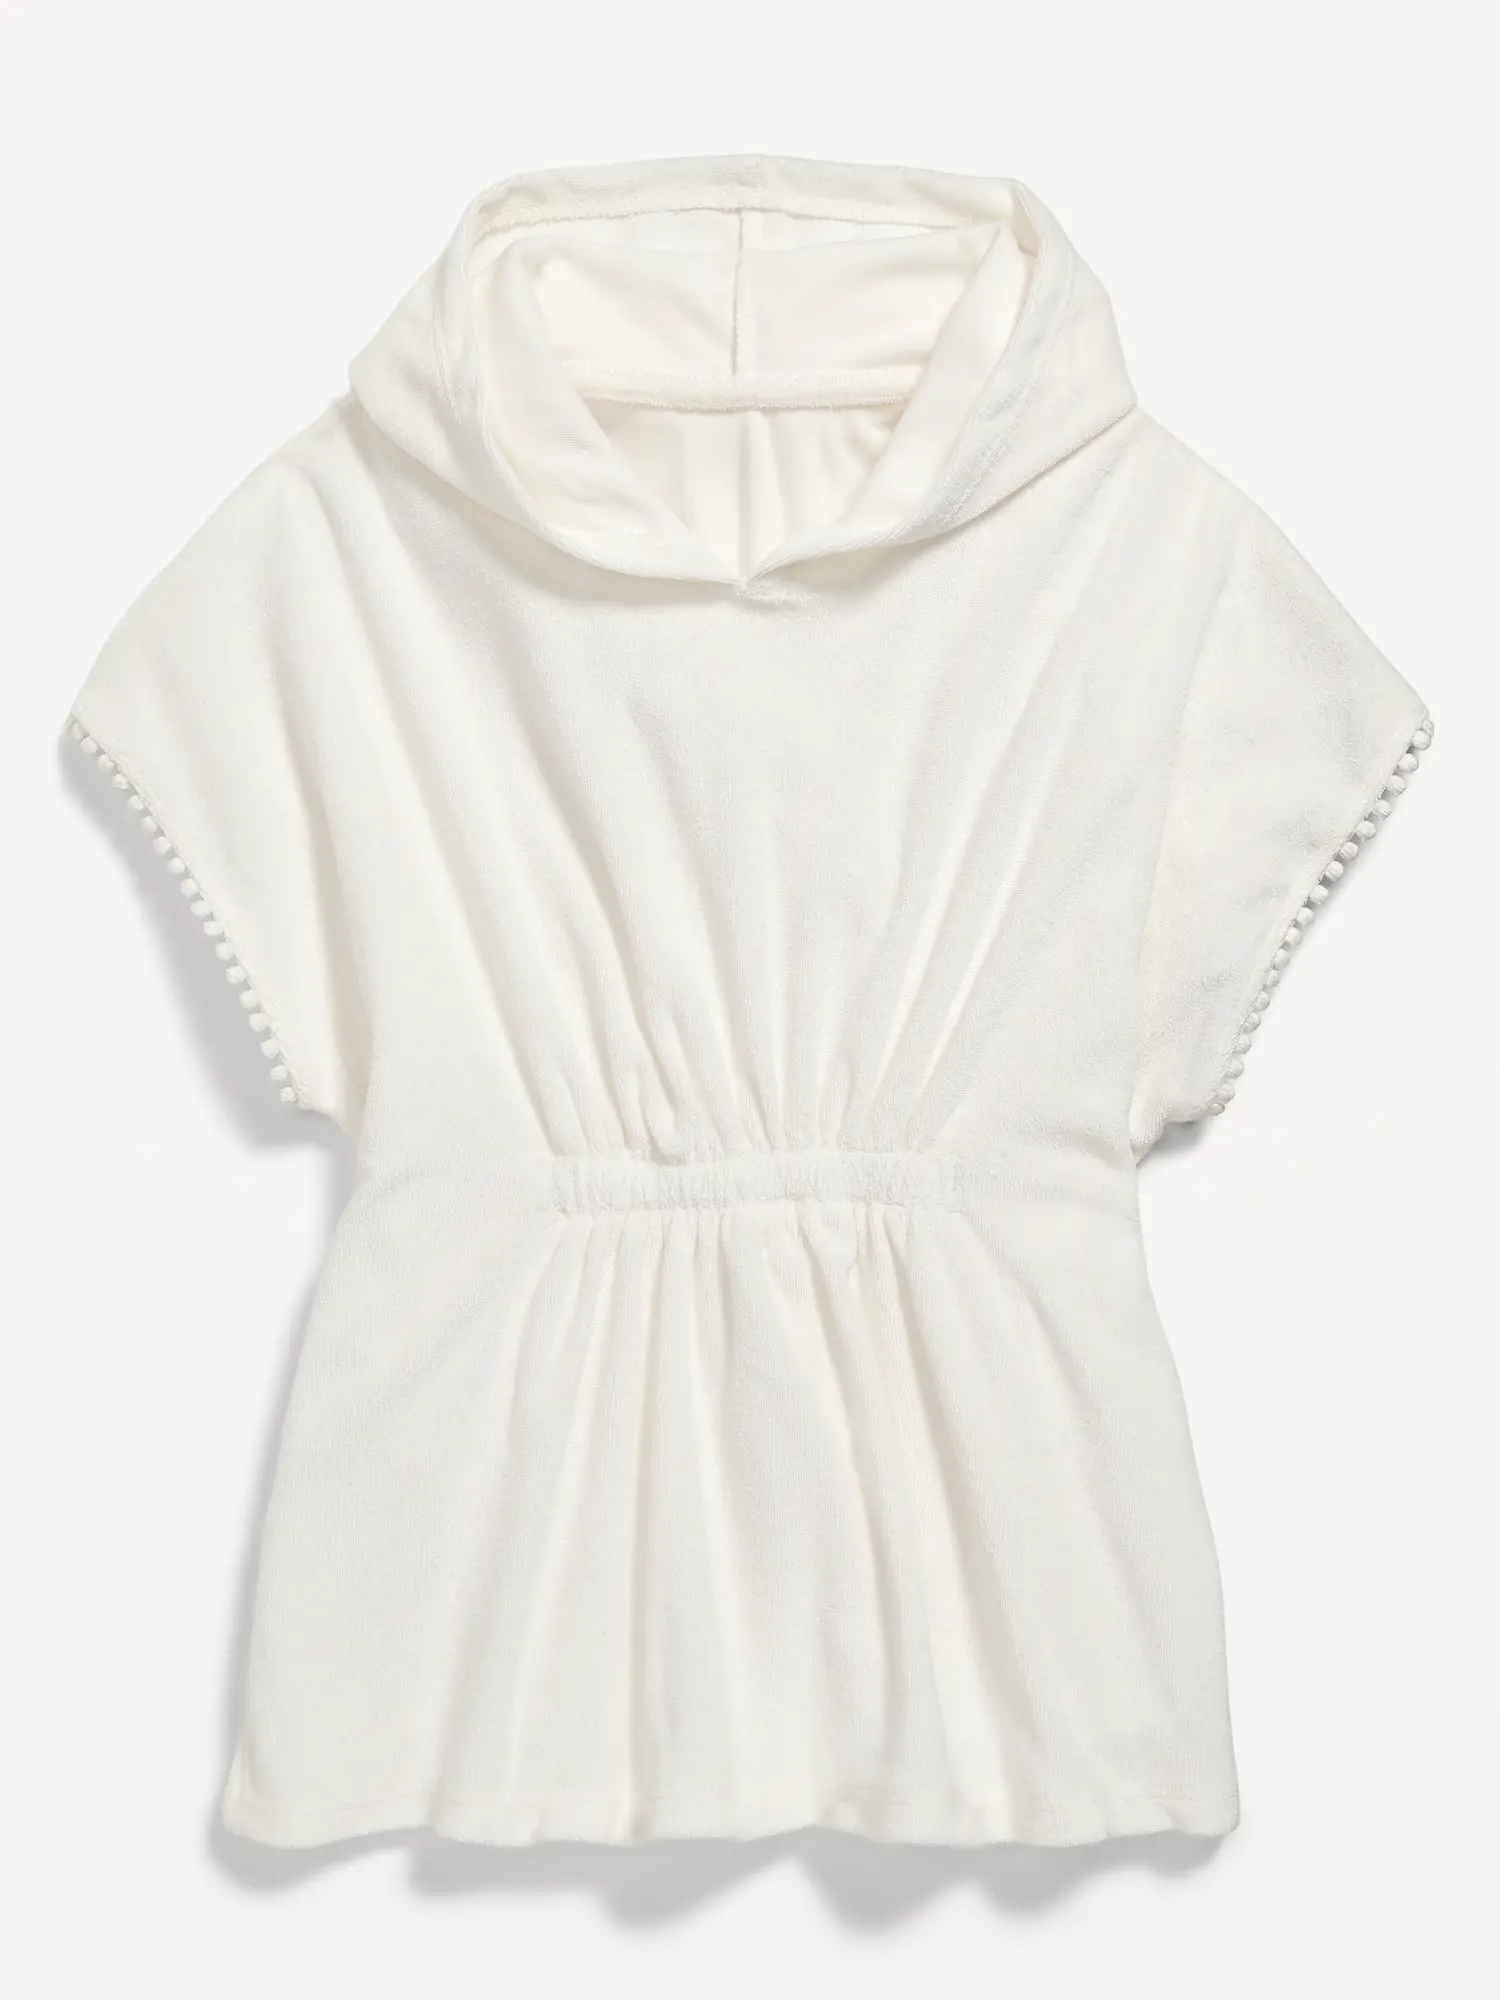 Old Navy Short-Sleeve Hooded Swim Cover-Up Dress for Toddler Girls white. 1